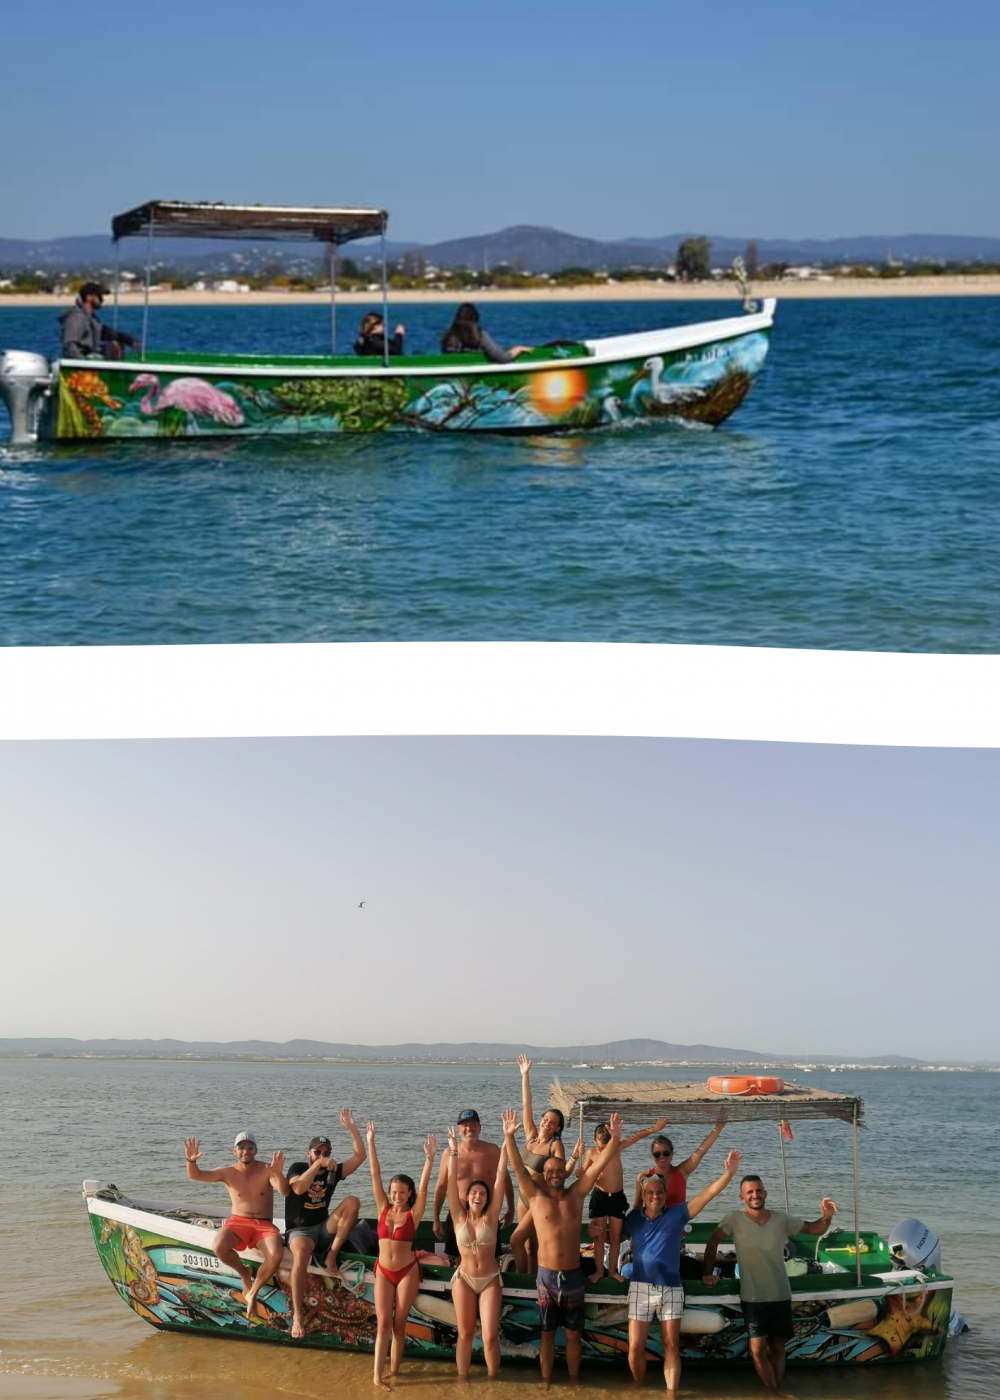 Barco - Ria Formosa Boat Tours - Passeio barco Olhão